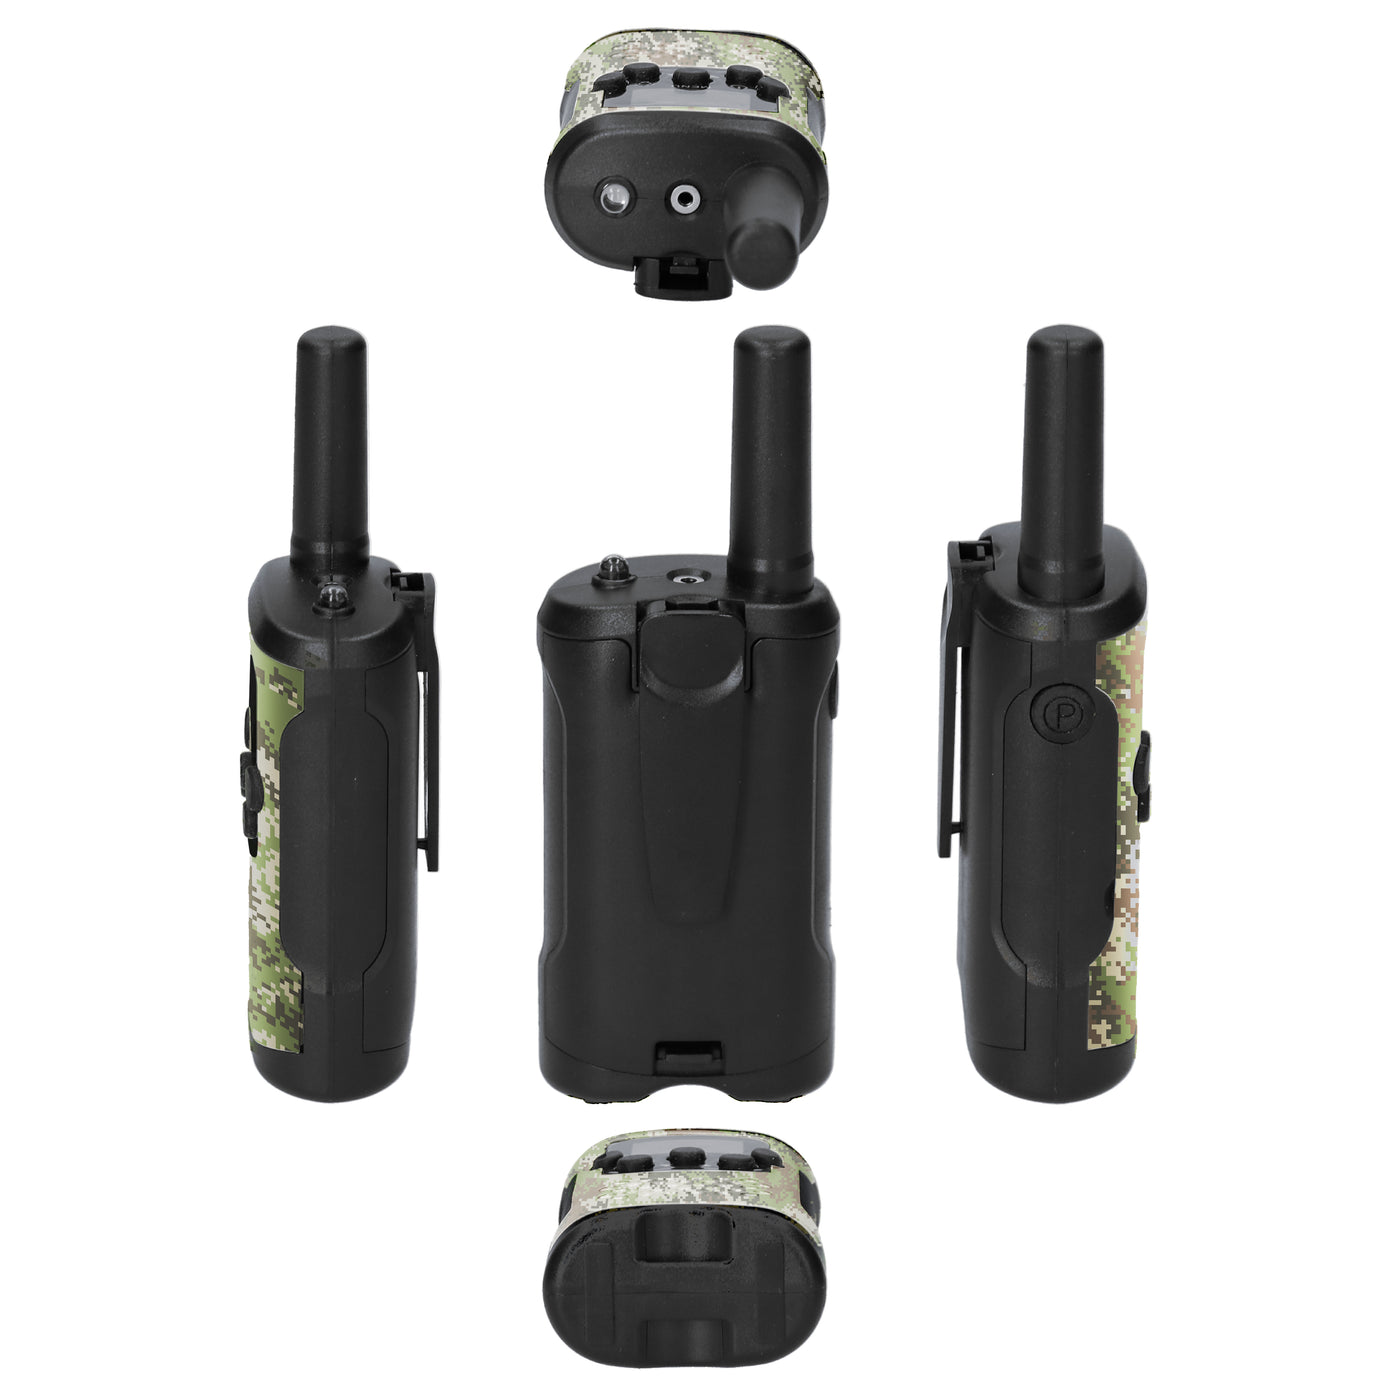 Alecto FR115CAMO - Lot de deux talkie-walkies pour enfants, Portée jusqu’à 7 kilomètres, camouflage